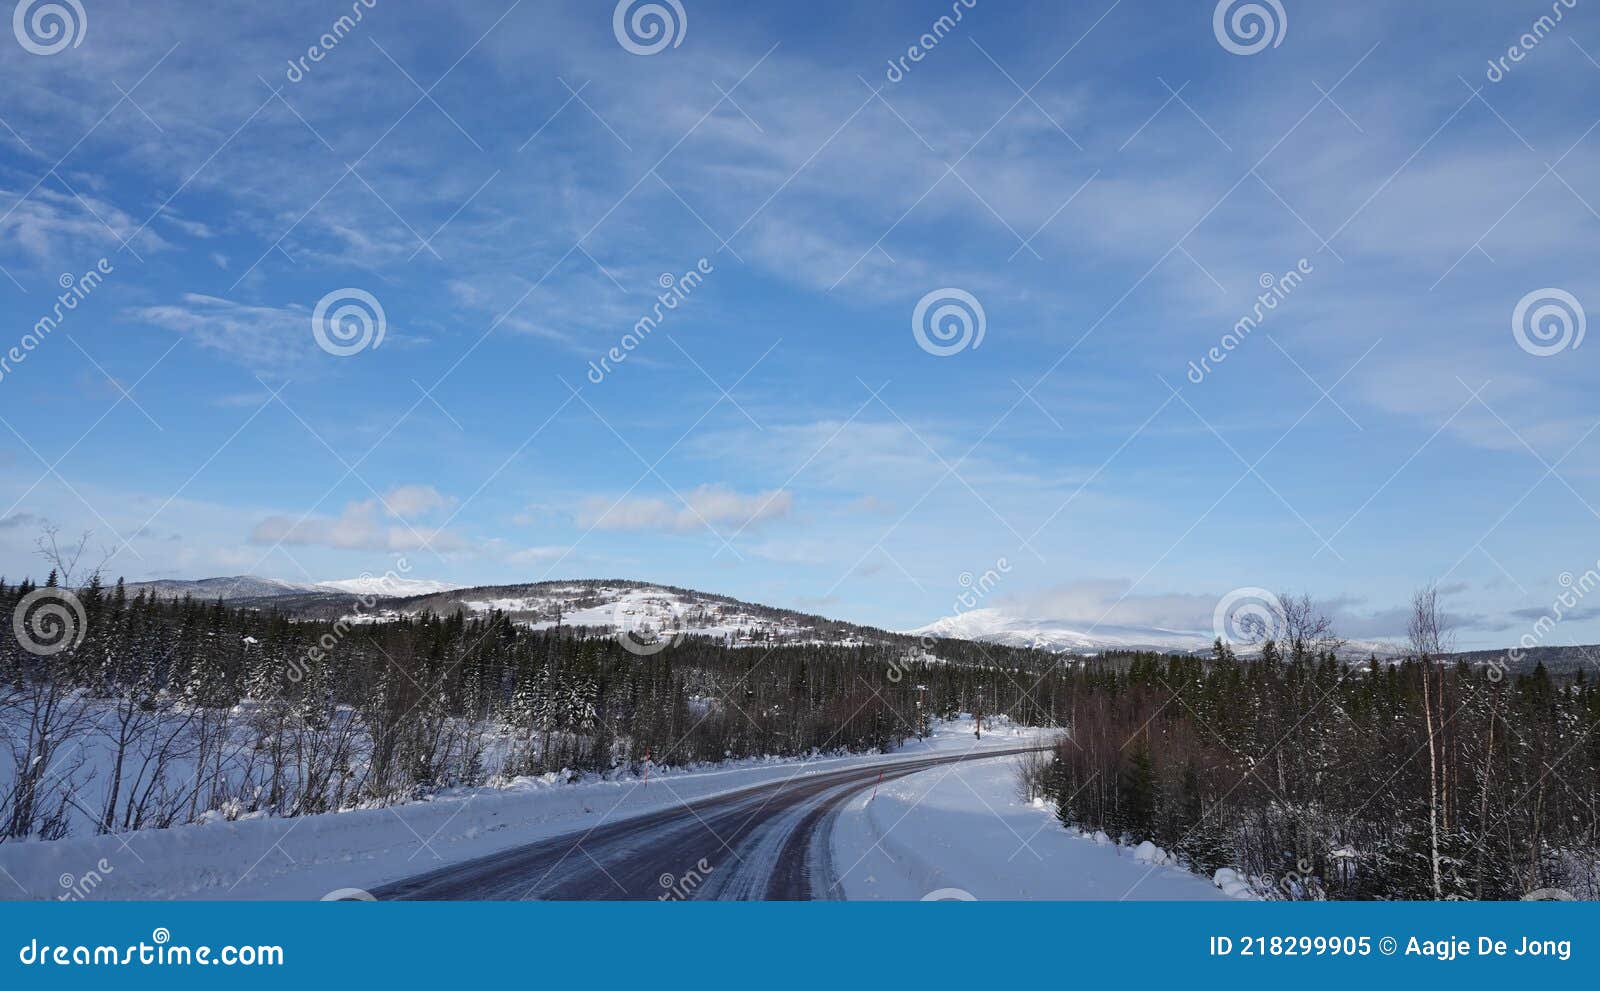 arefjallen mountains near undersaker town in winter in jamtland in sweden